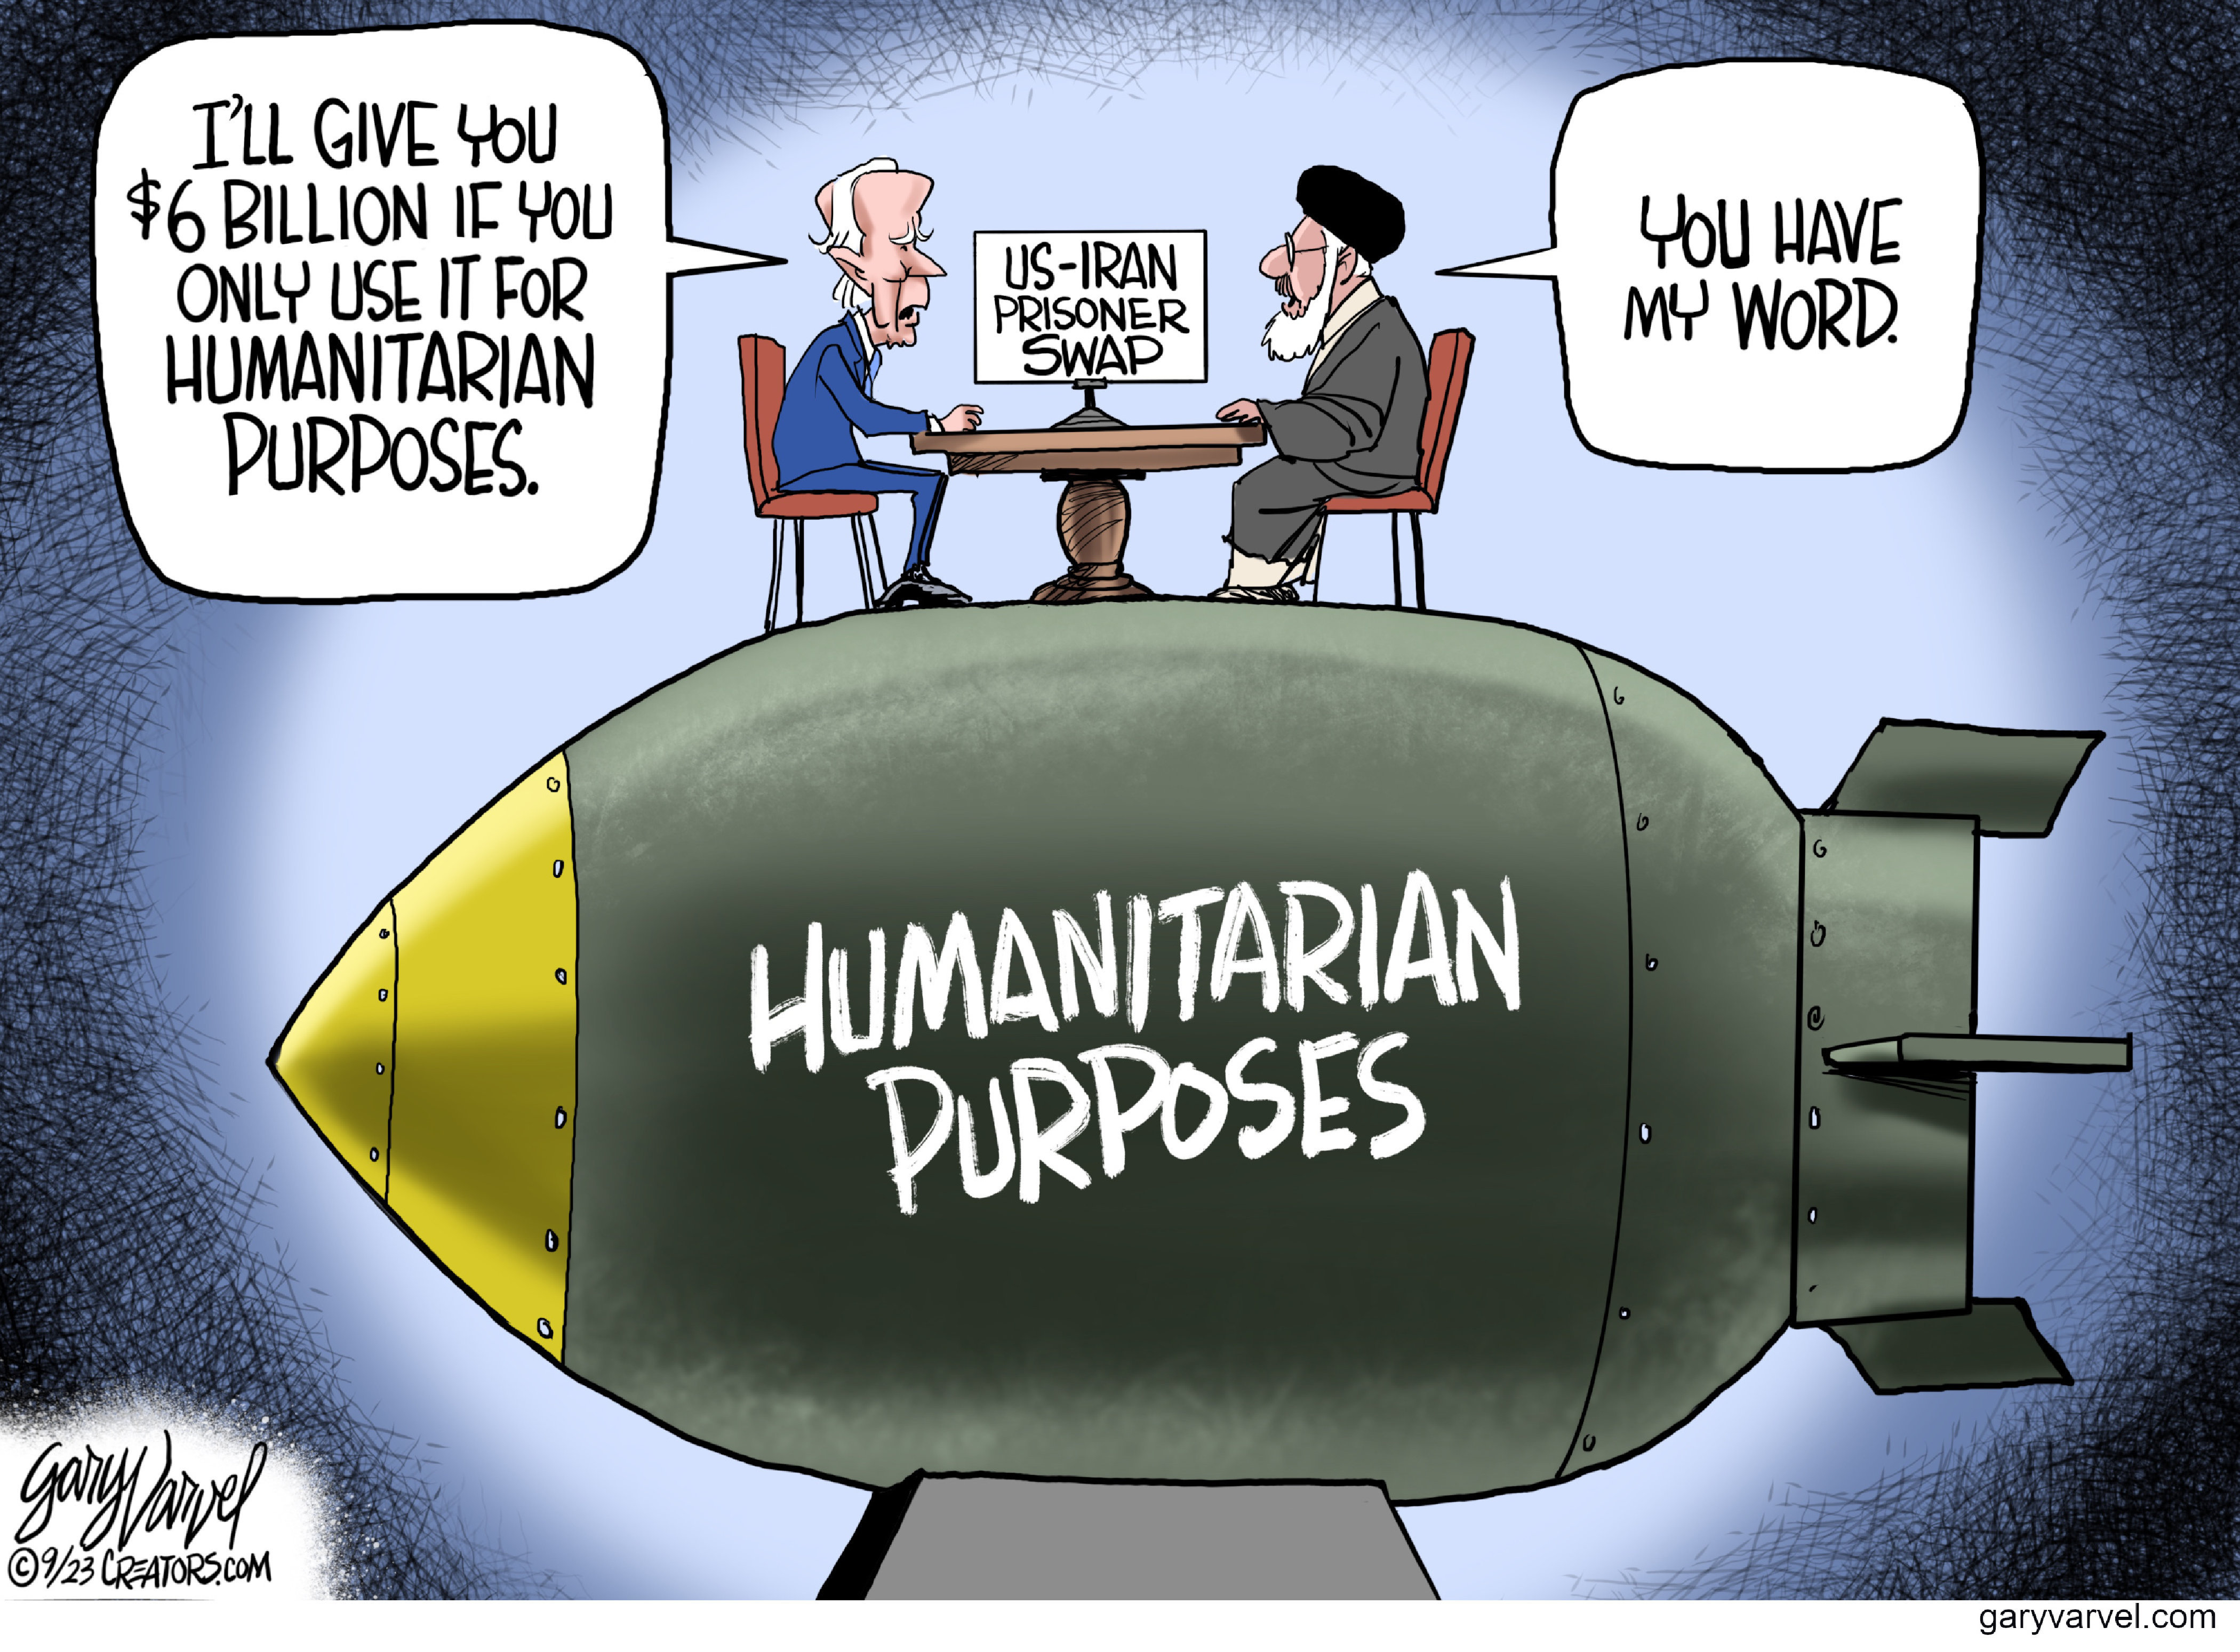  Humanitarian                                                        purposes 